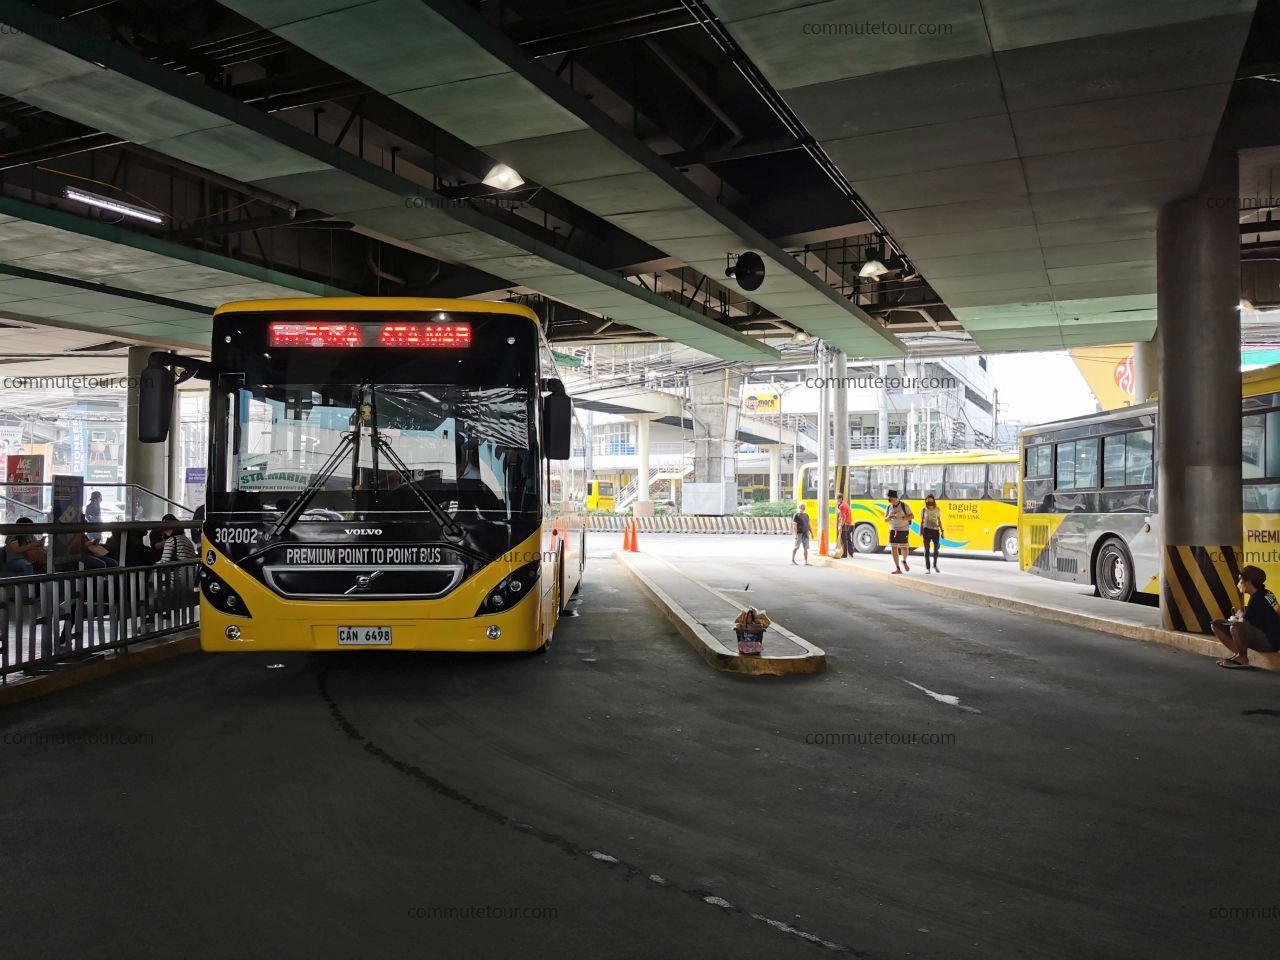 SM-north-terminal-bus-0002